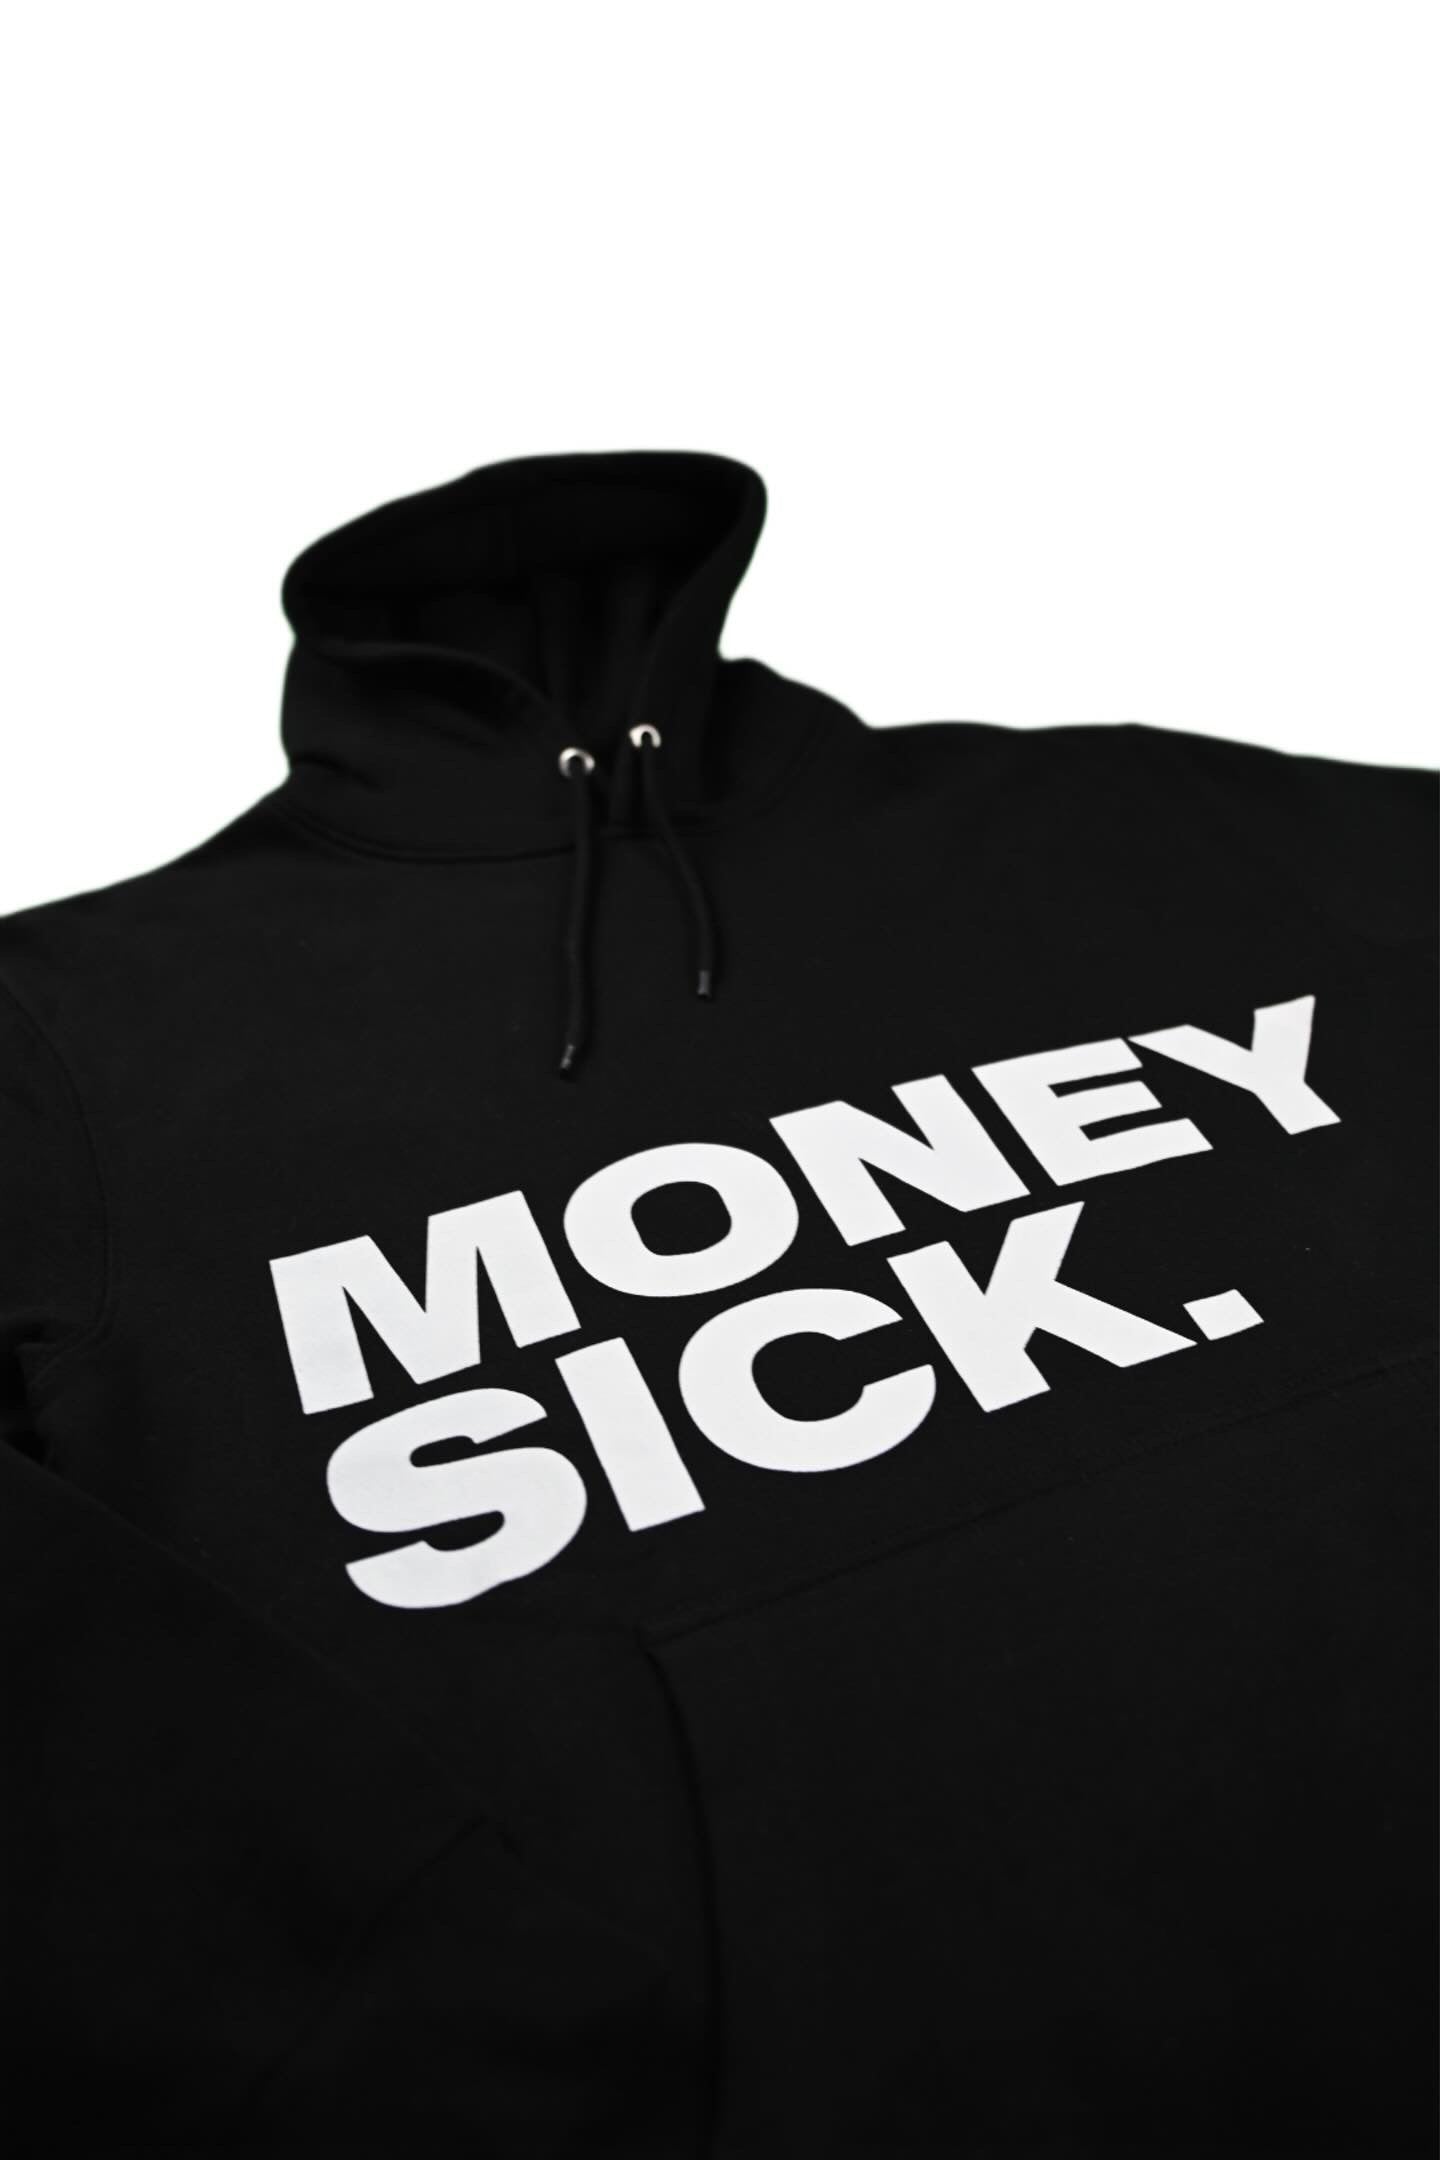 Moneysick Black hoodie